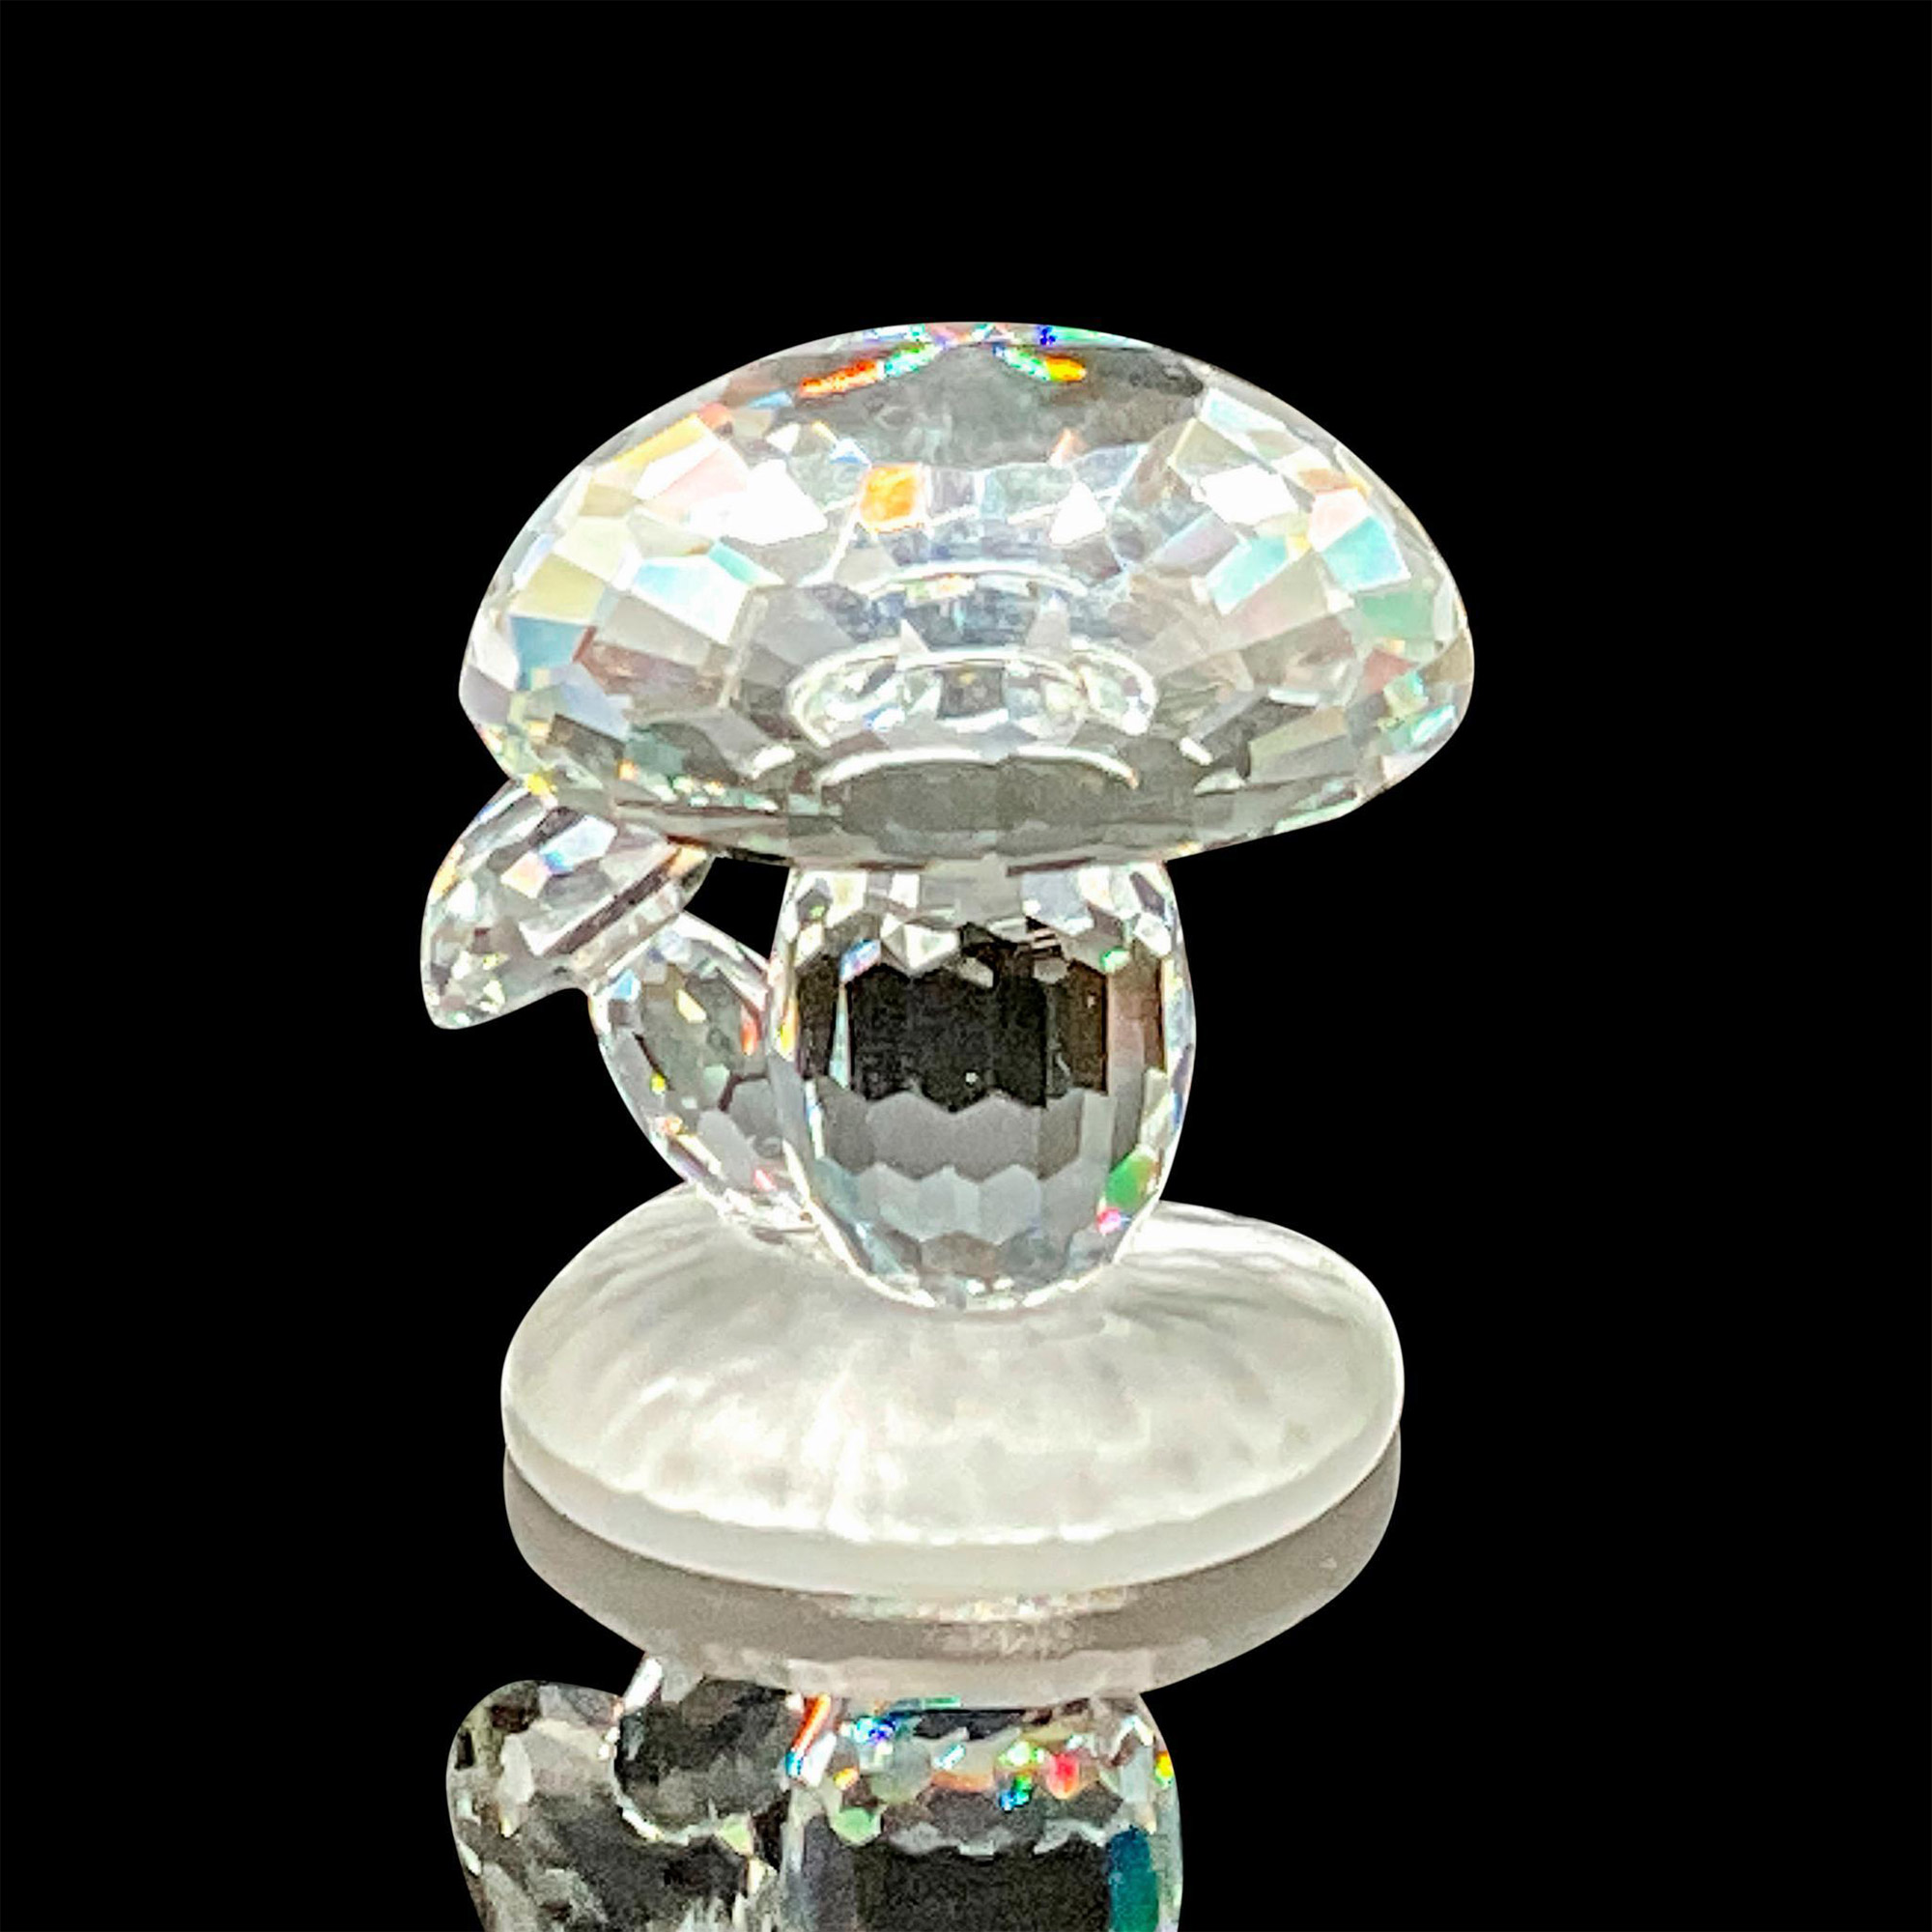 Swarovski Crystal Figurine, Mushrooms - Image 2 of 4